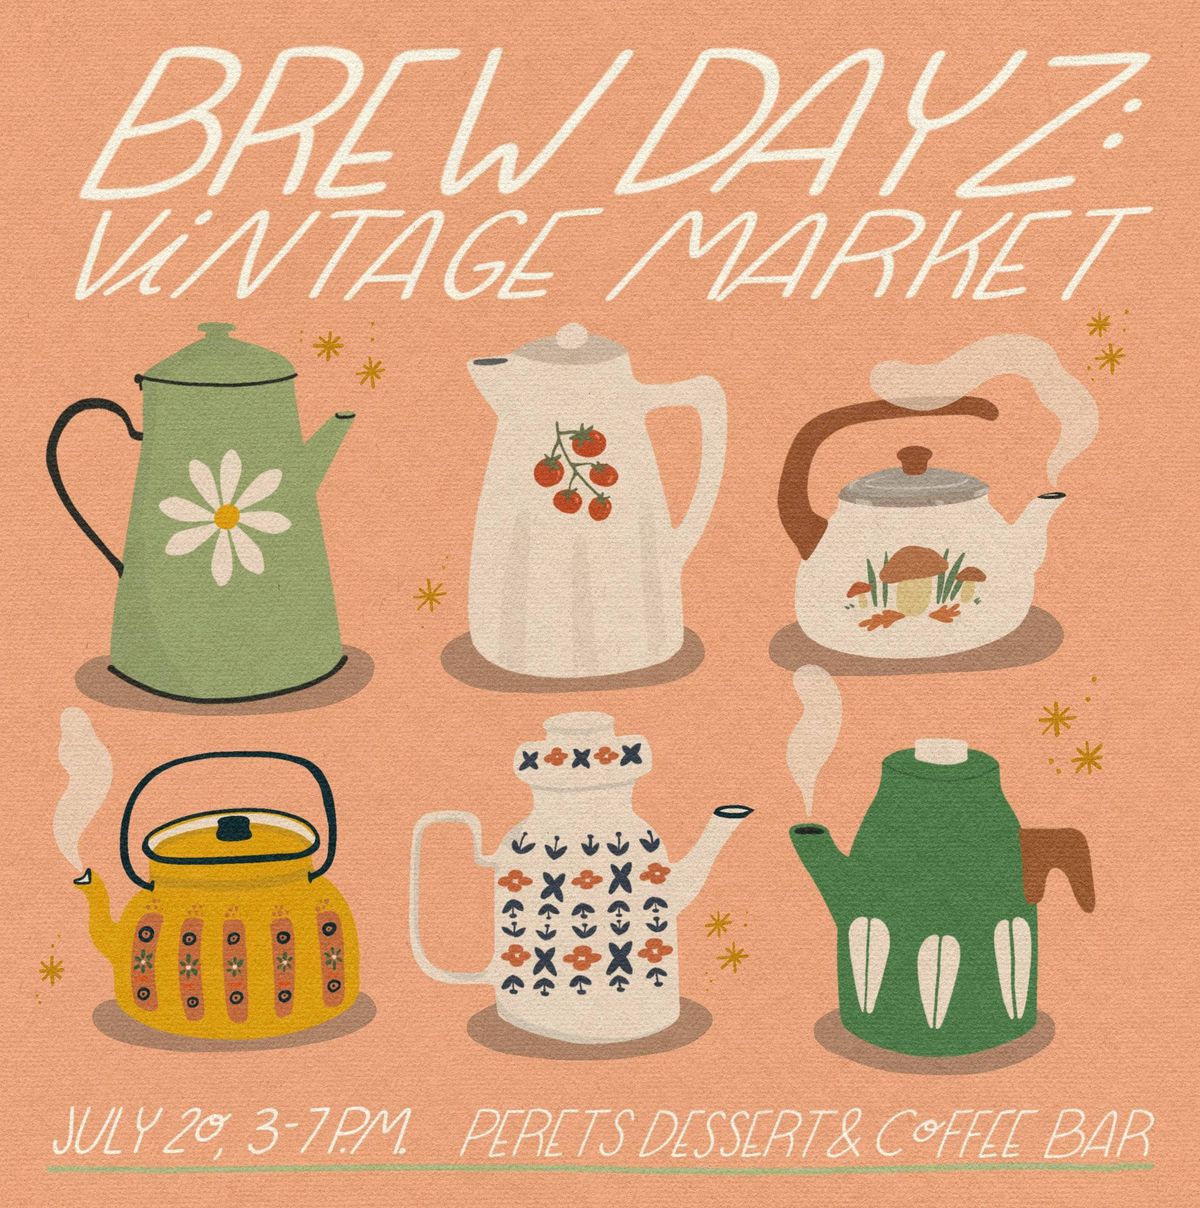 Brew Dayz: Vintage Market